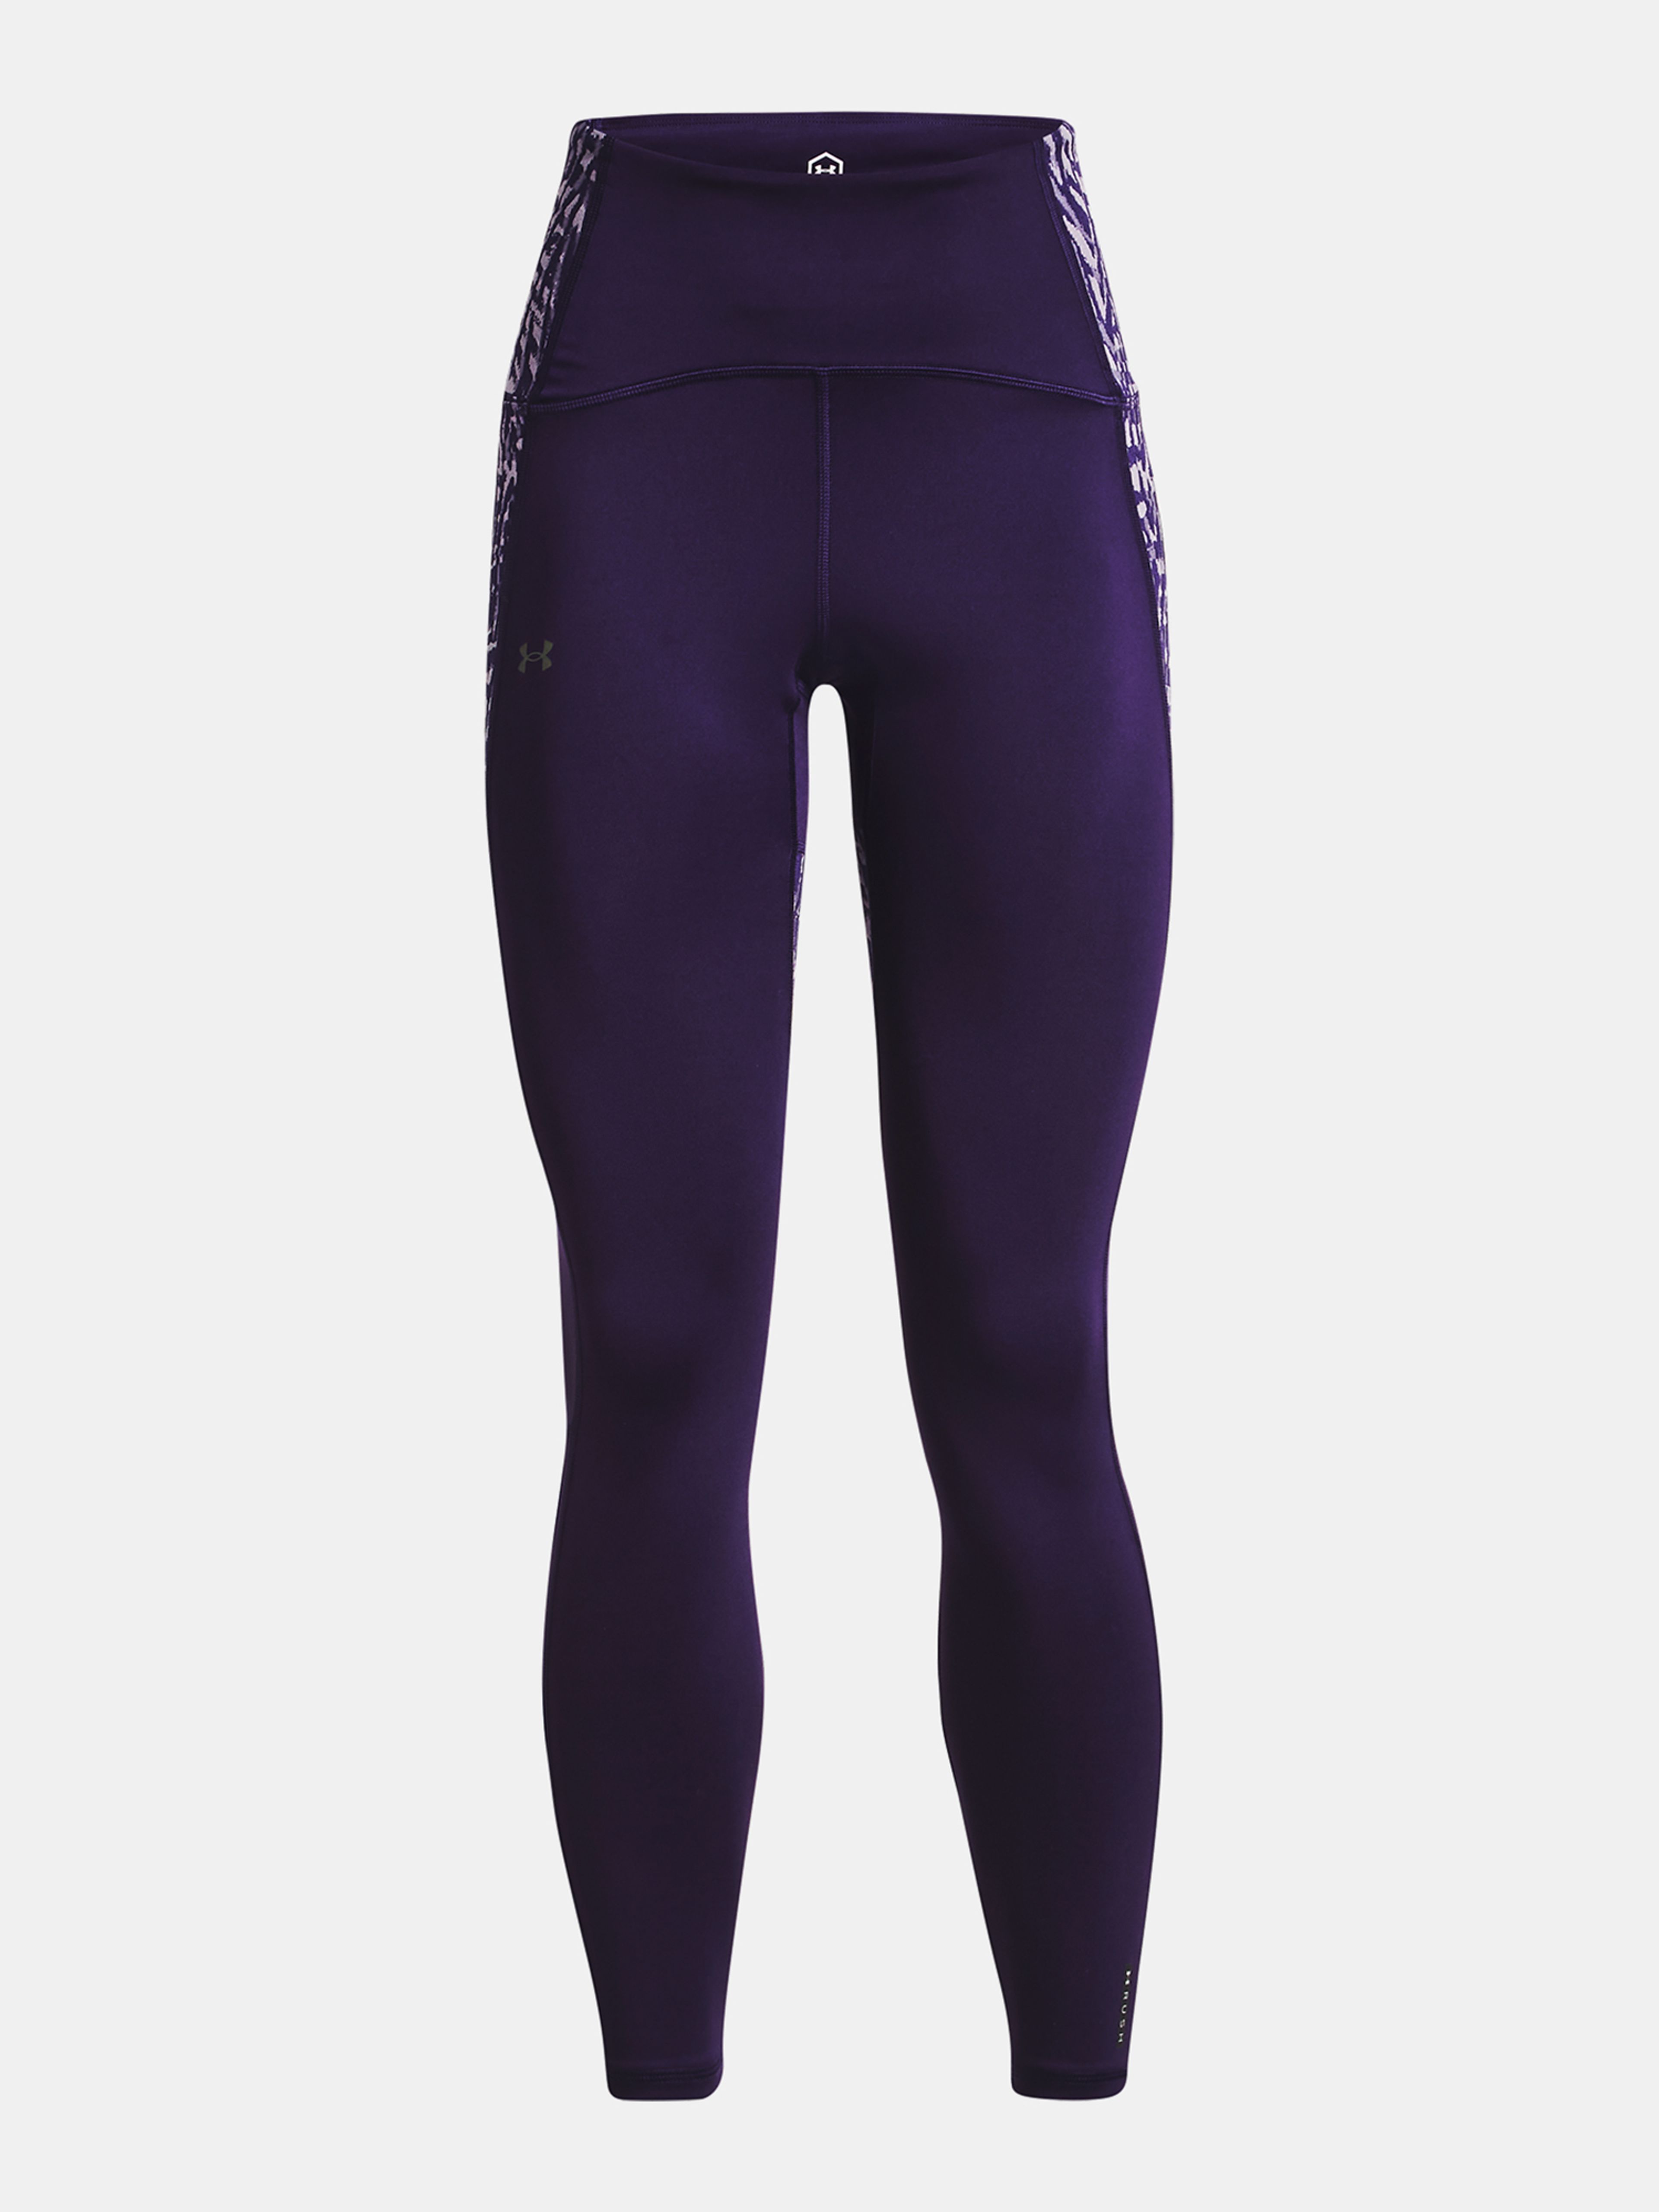  UA Rush Legging 6M Novelty-BLK - women's leggings - UNDER  ARMOUR - 63.10 € - outdoorové oblečení a vybavení shop